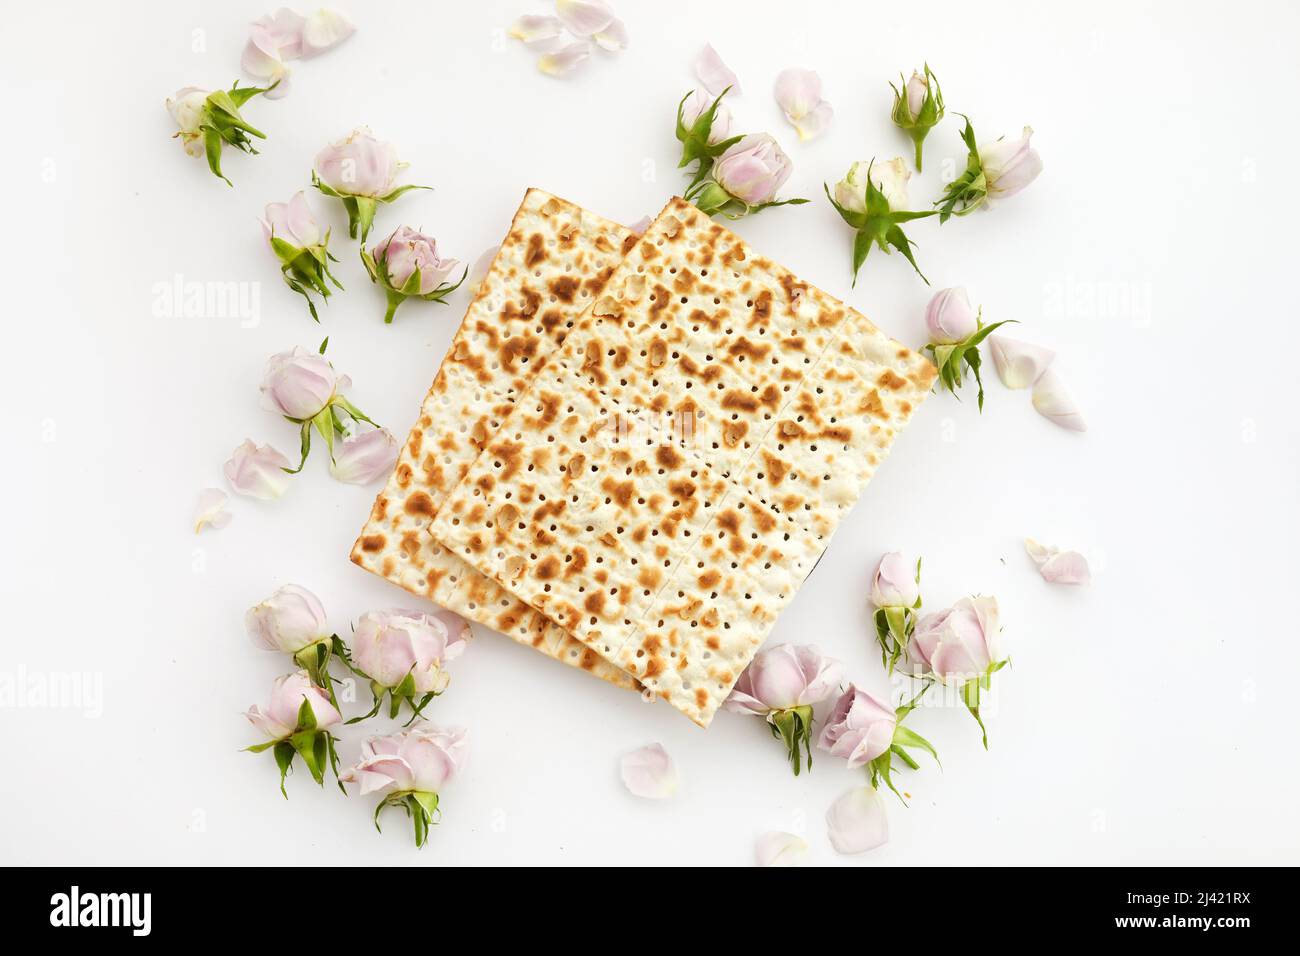 Concept de célébration de Pesah, fête de la Pâque juive. Pain juif traditionnel rituel sur fond blanc Banque D'Images